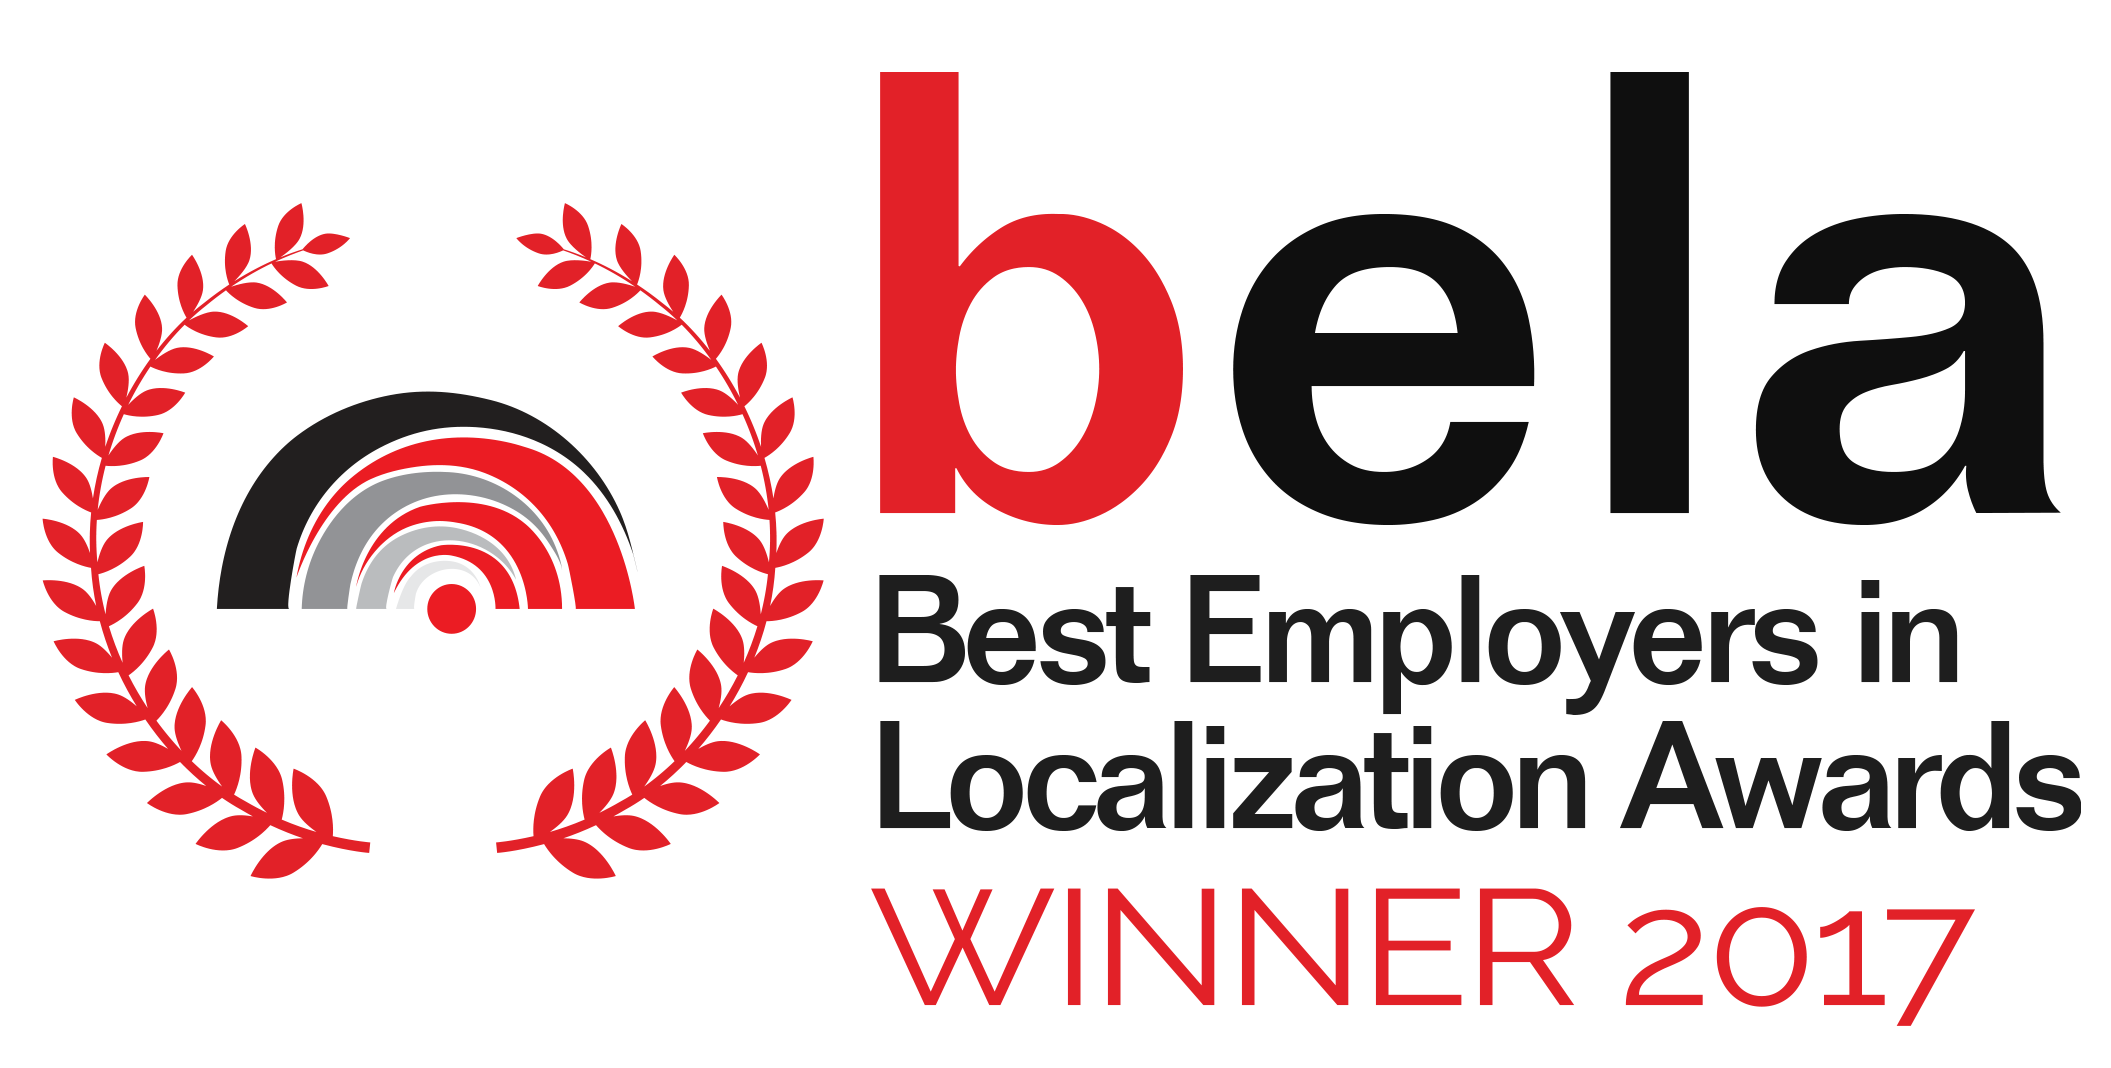 best employer in localization winner